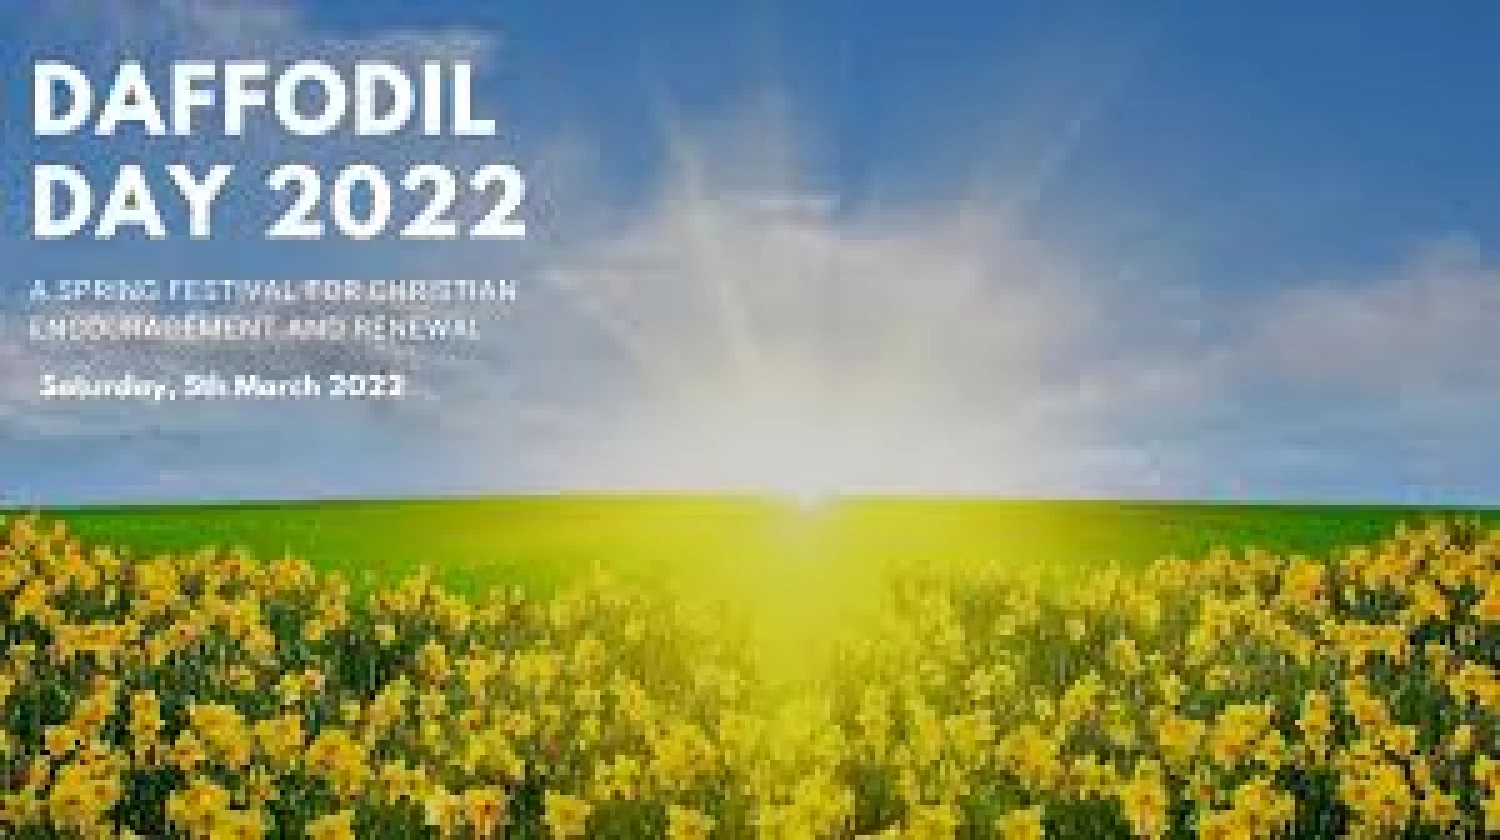 daffodil day 2022